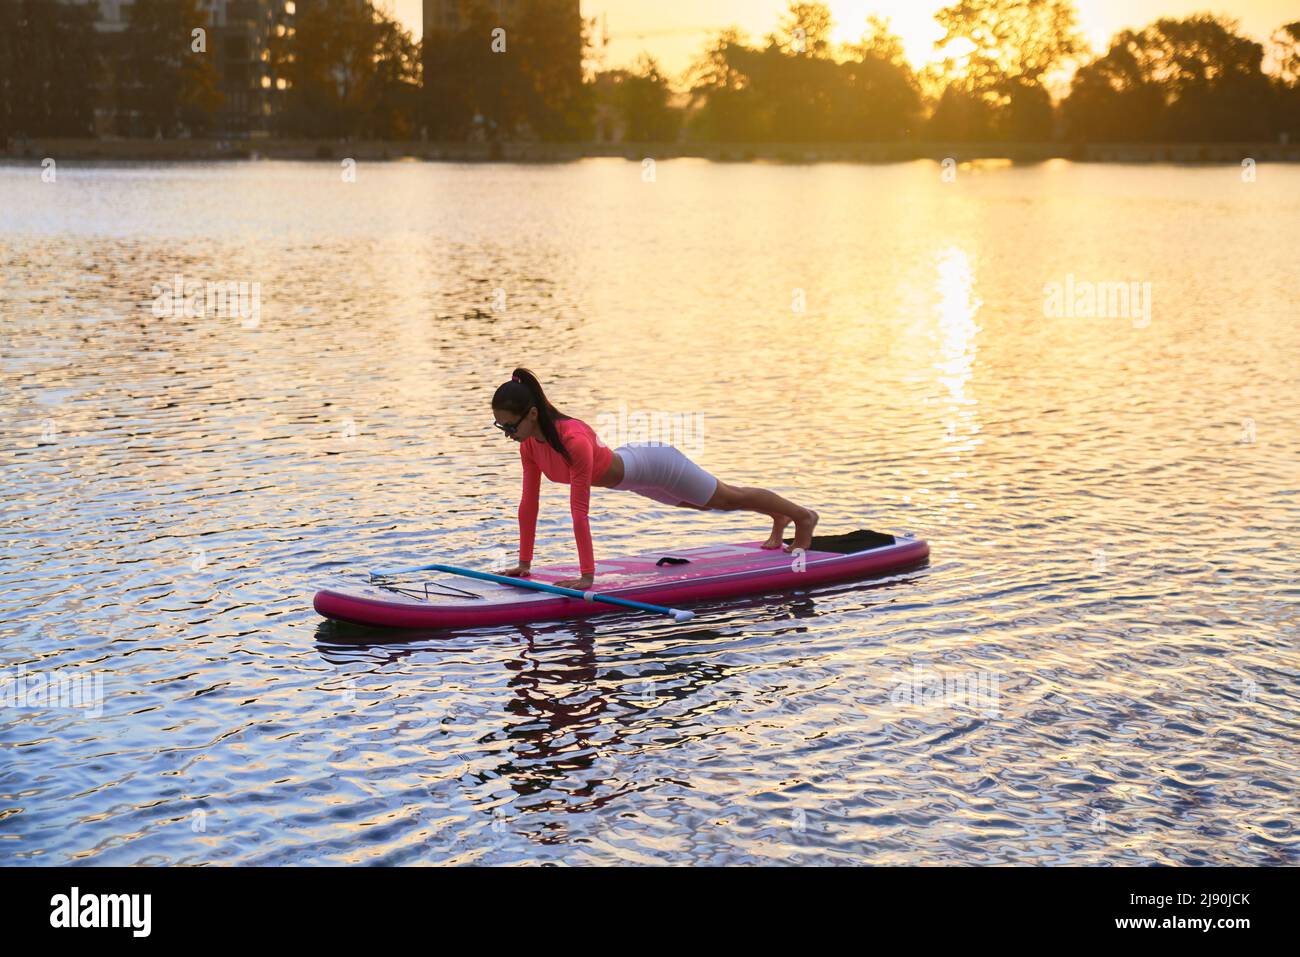 Sportliche kaukasische Frau, die Plank-Übungen macht, während sie auf dem Paddle-Board auf dem Stadtsee schwimmt. Schöner Sommeruntergang im Hintergrund. Gesunde und aktive Lebensweise. Stockfoto